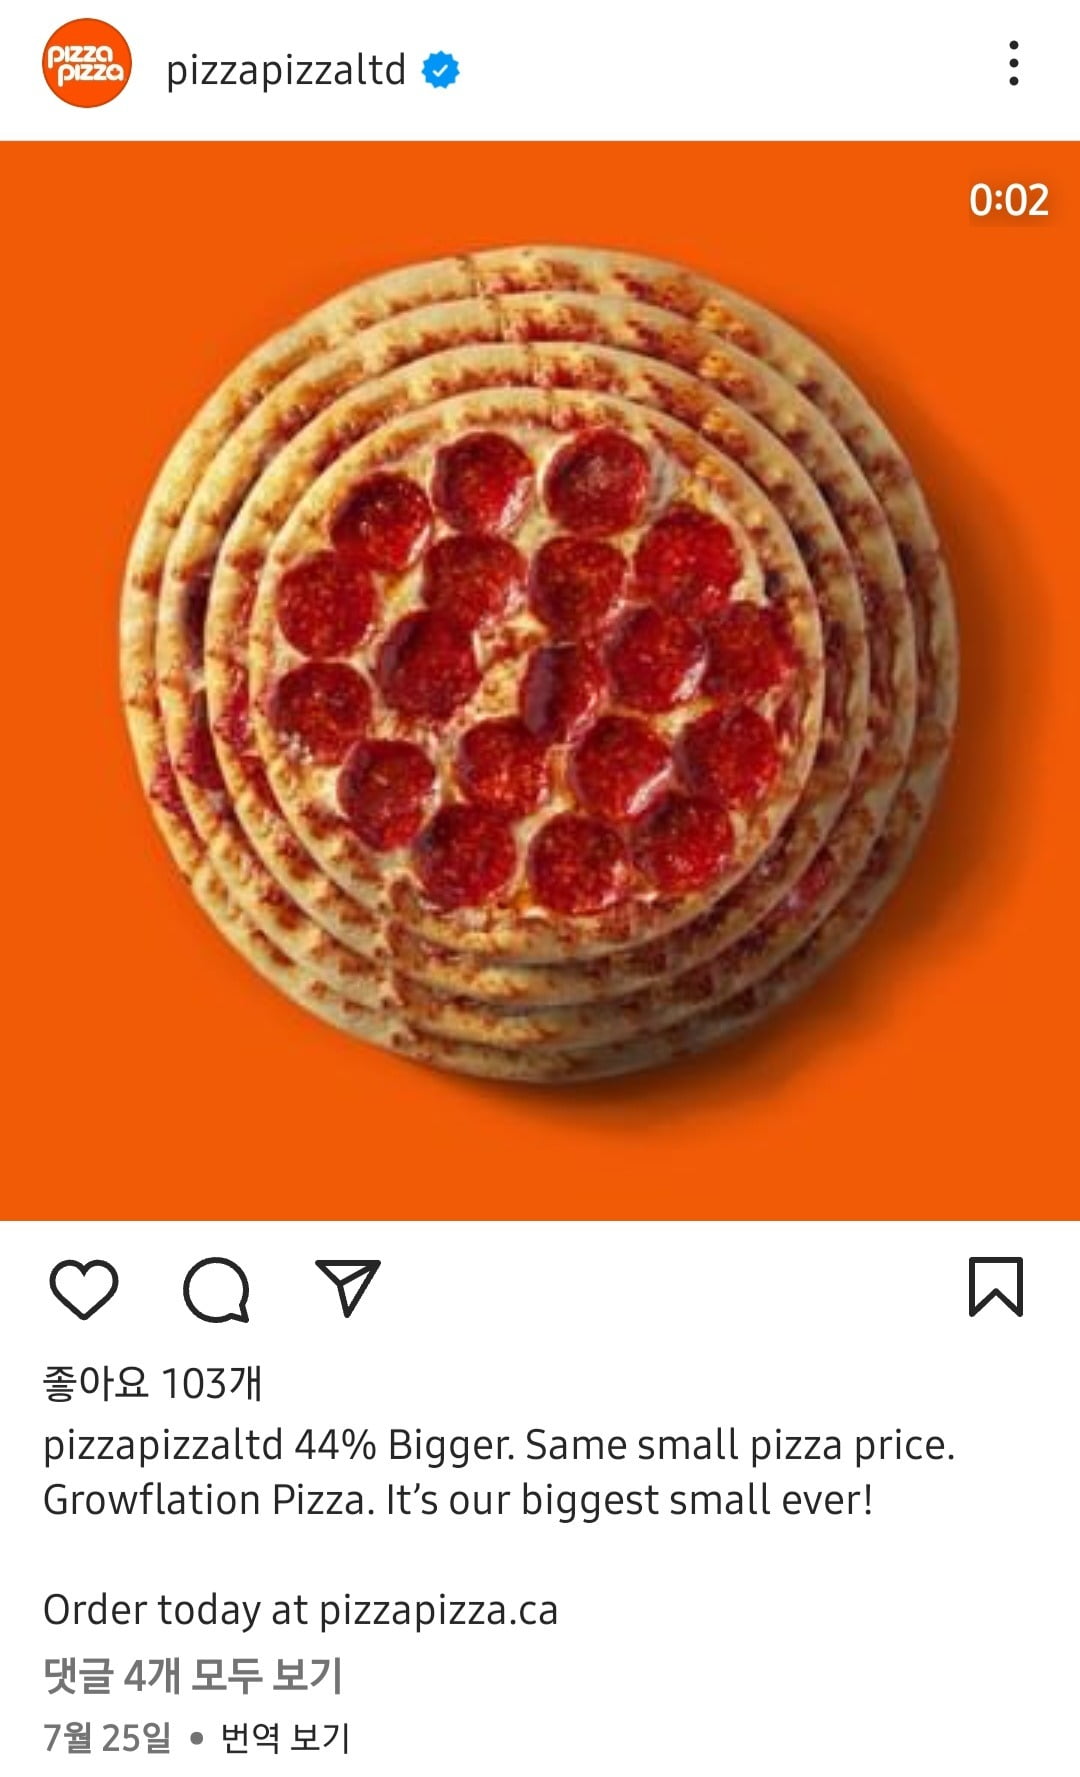 캐나다의 피자 프랜차이즈 기업 '피자피자'가 지난 7월 출시한 '그로우플레이션' 피자의 인스타그램 광고 게시물. /사진='pizzapizzaltd' 인스타그램 캡처